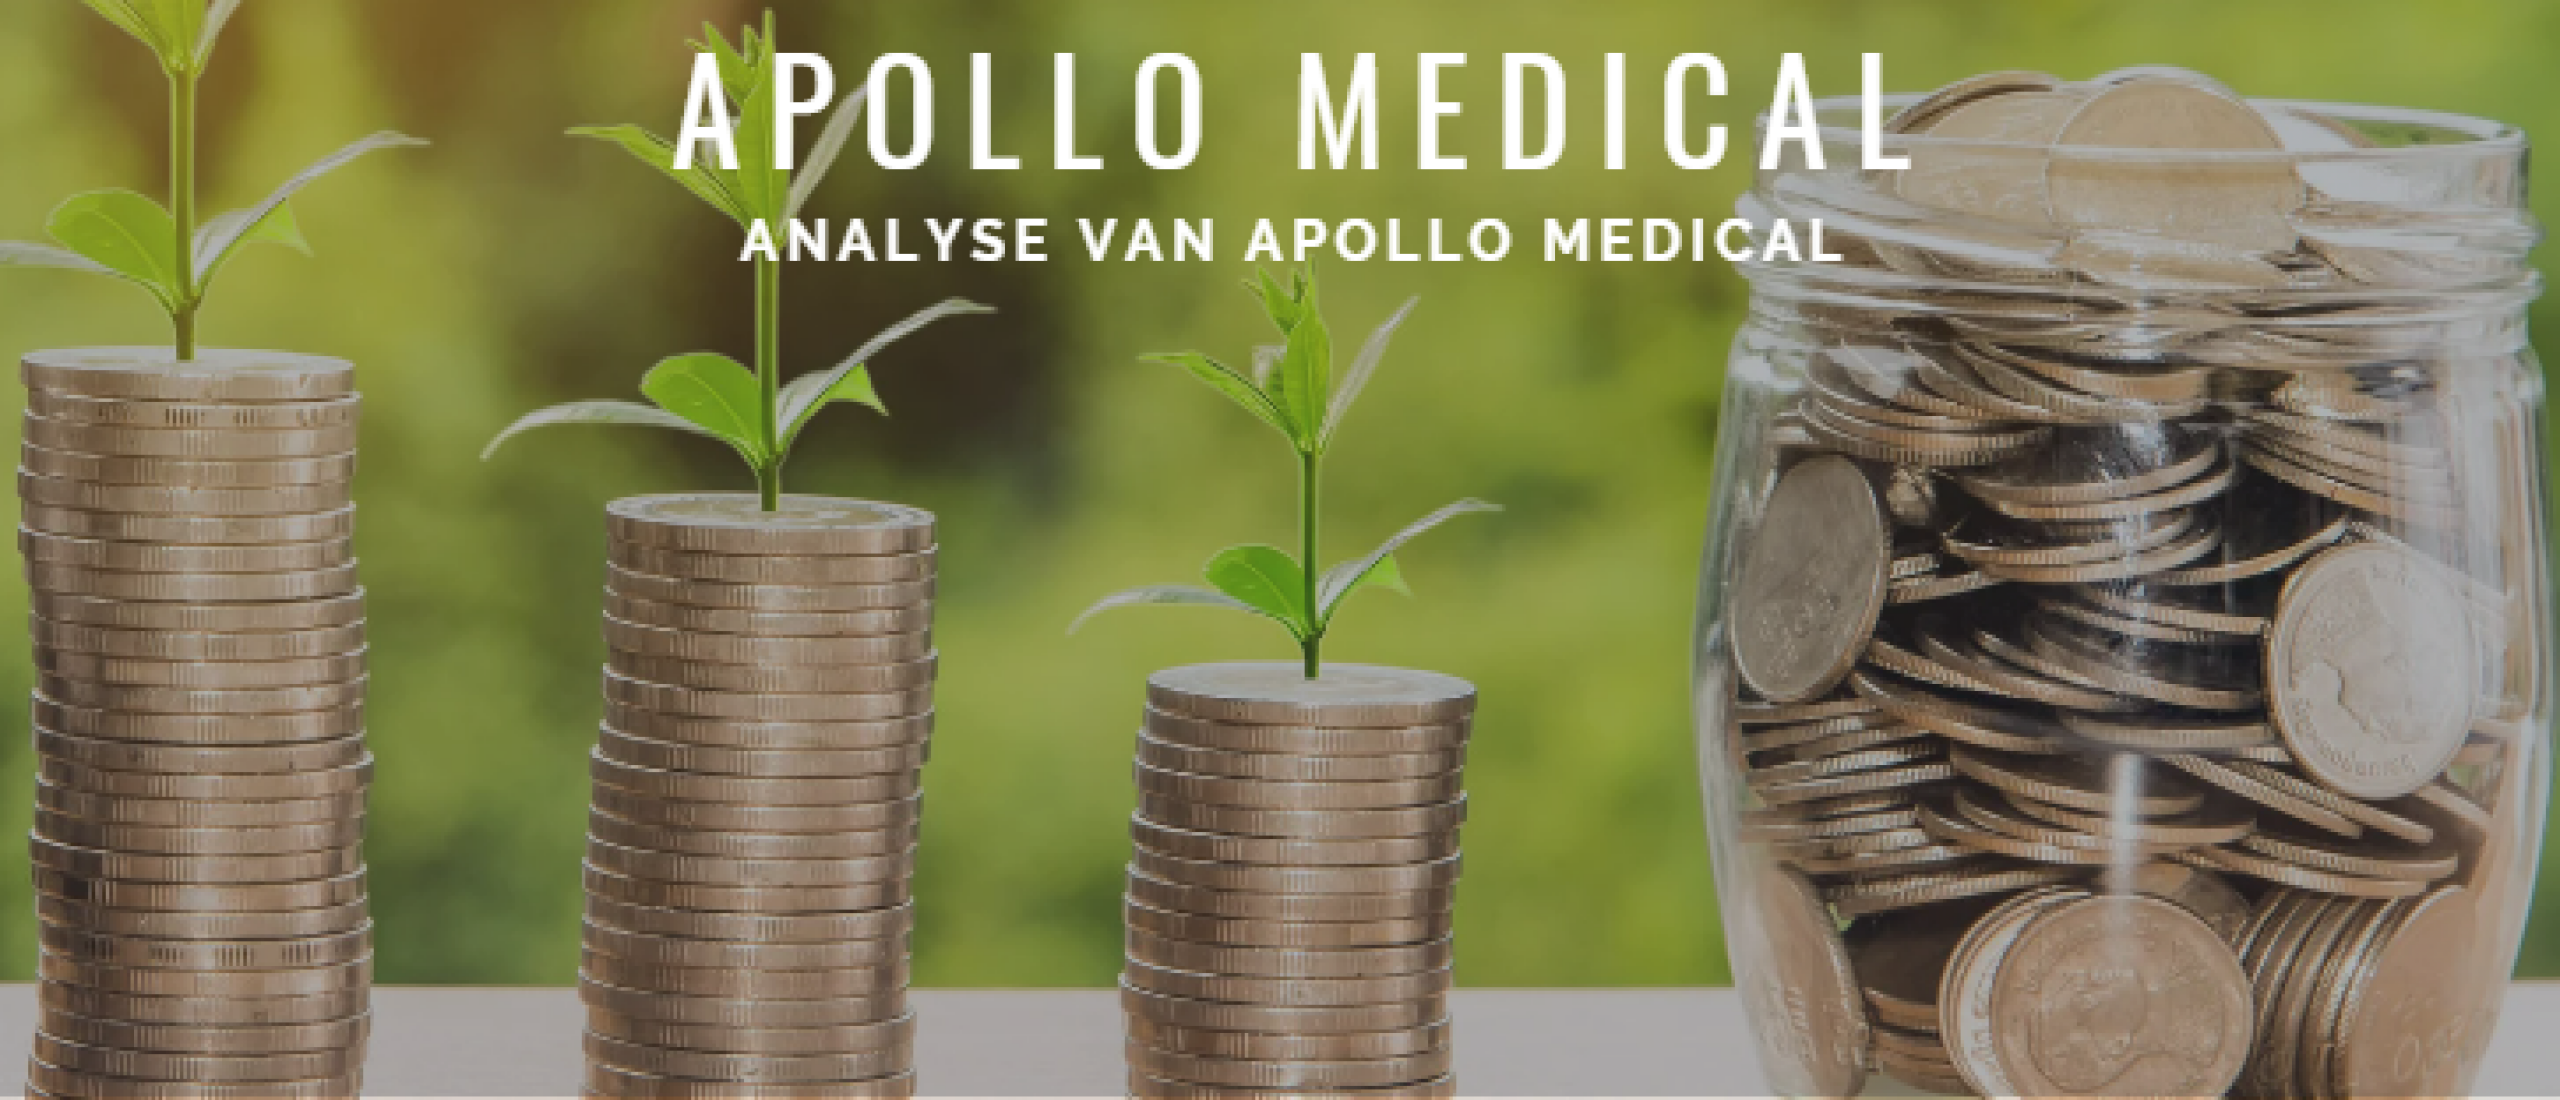 Apollo Medical aandelen kopen? Analyse +34% Groei | Happy Investors